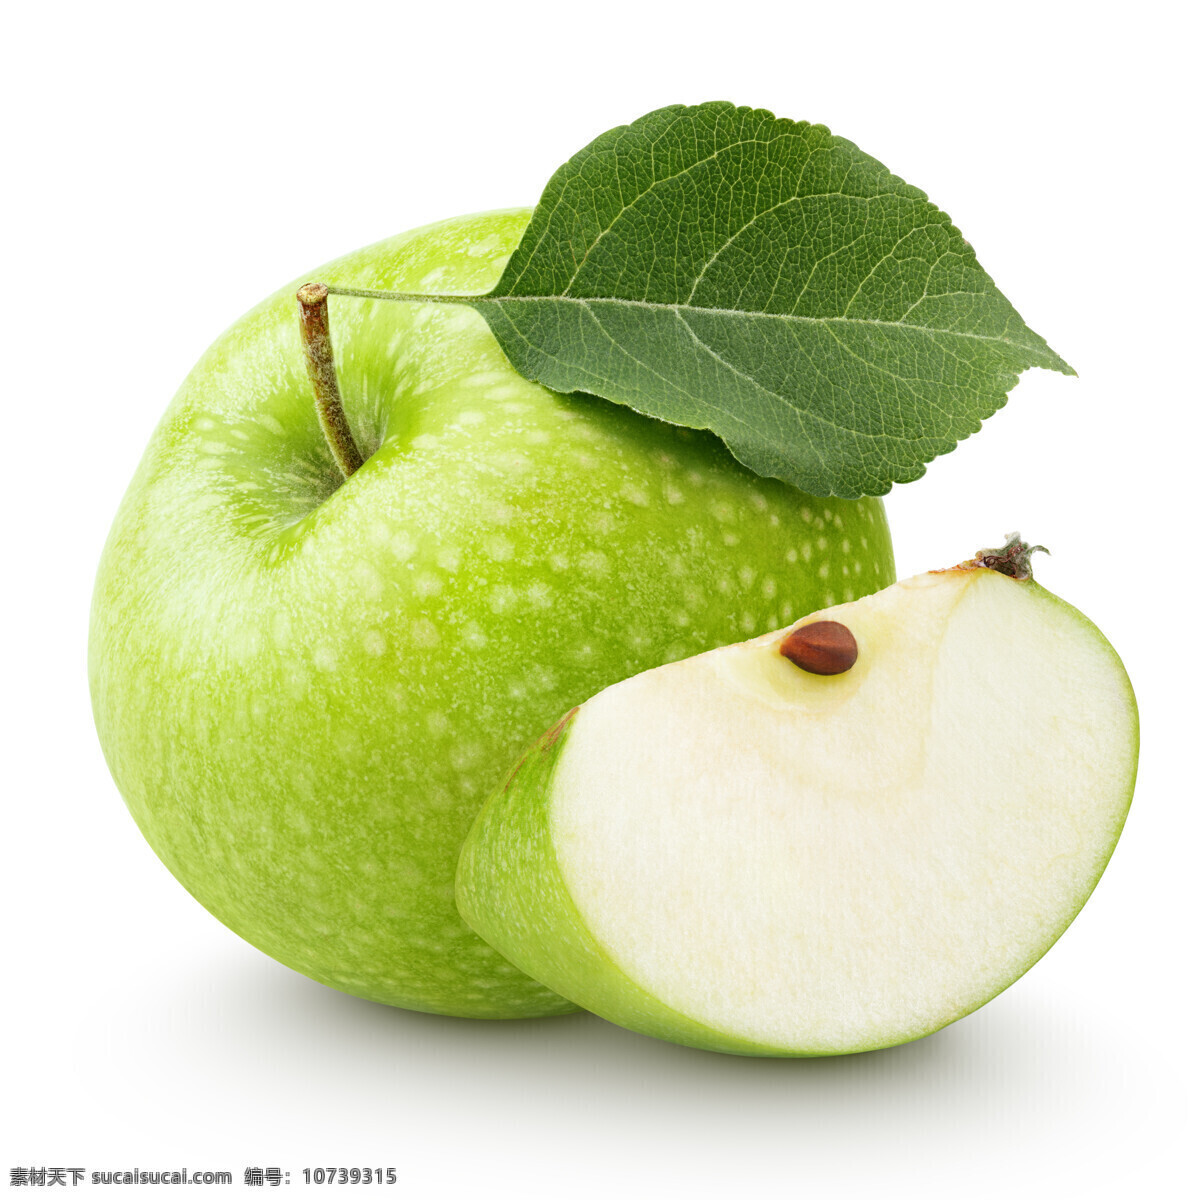 苹果 青苹果 苹果园 新疆苹果 阿克苏苹果 水果 生物世界